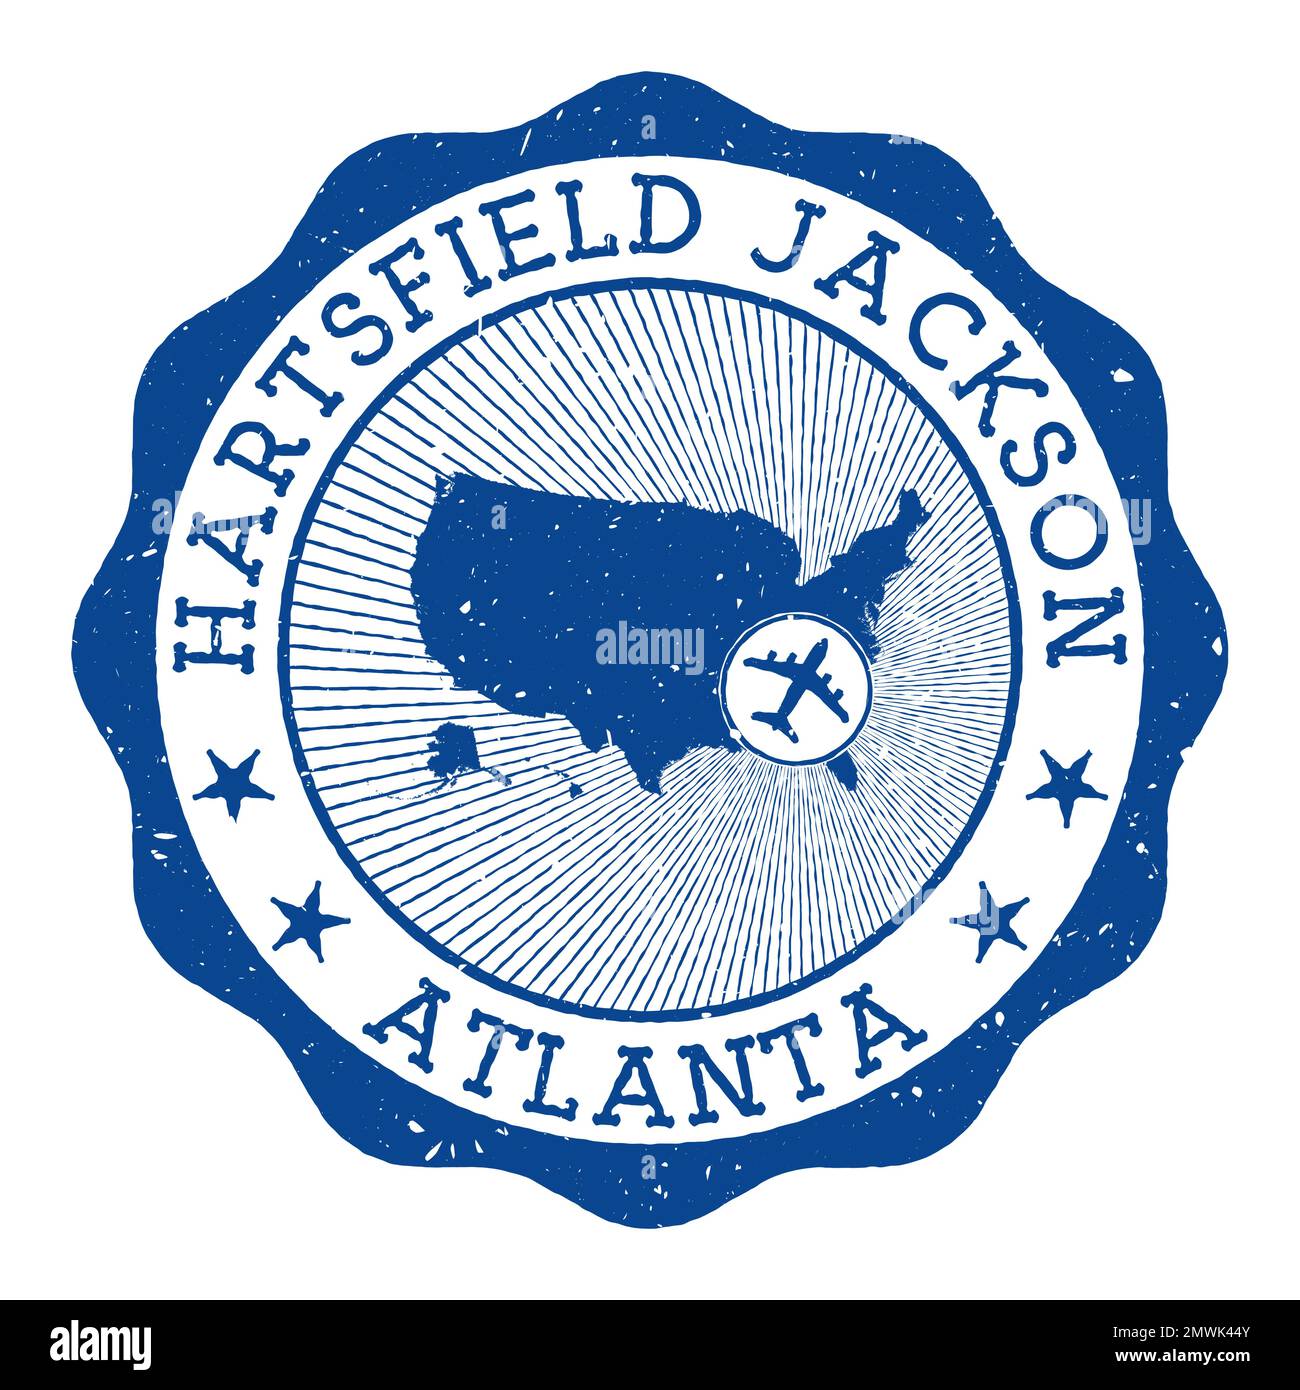 Hartsfield Jackson Atlanta-Stempel. Rundes Logo des Flughafens von Atlanta mit Standort auf der Karte der Vereinigten Staaten, gekennzeichnet durch Flugzeug. Vektordarstellung. Stock Vektor